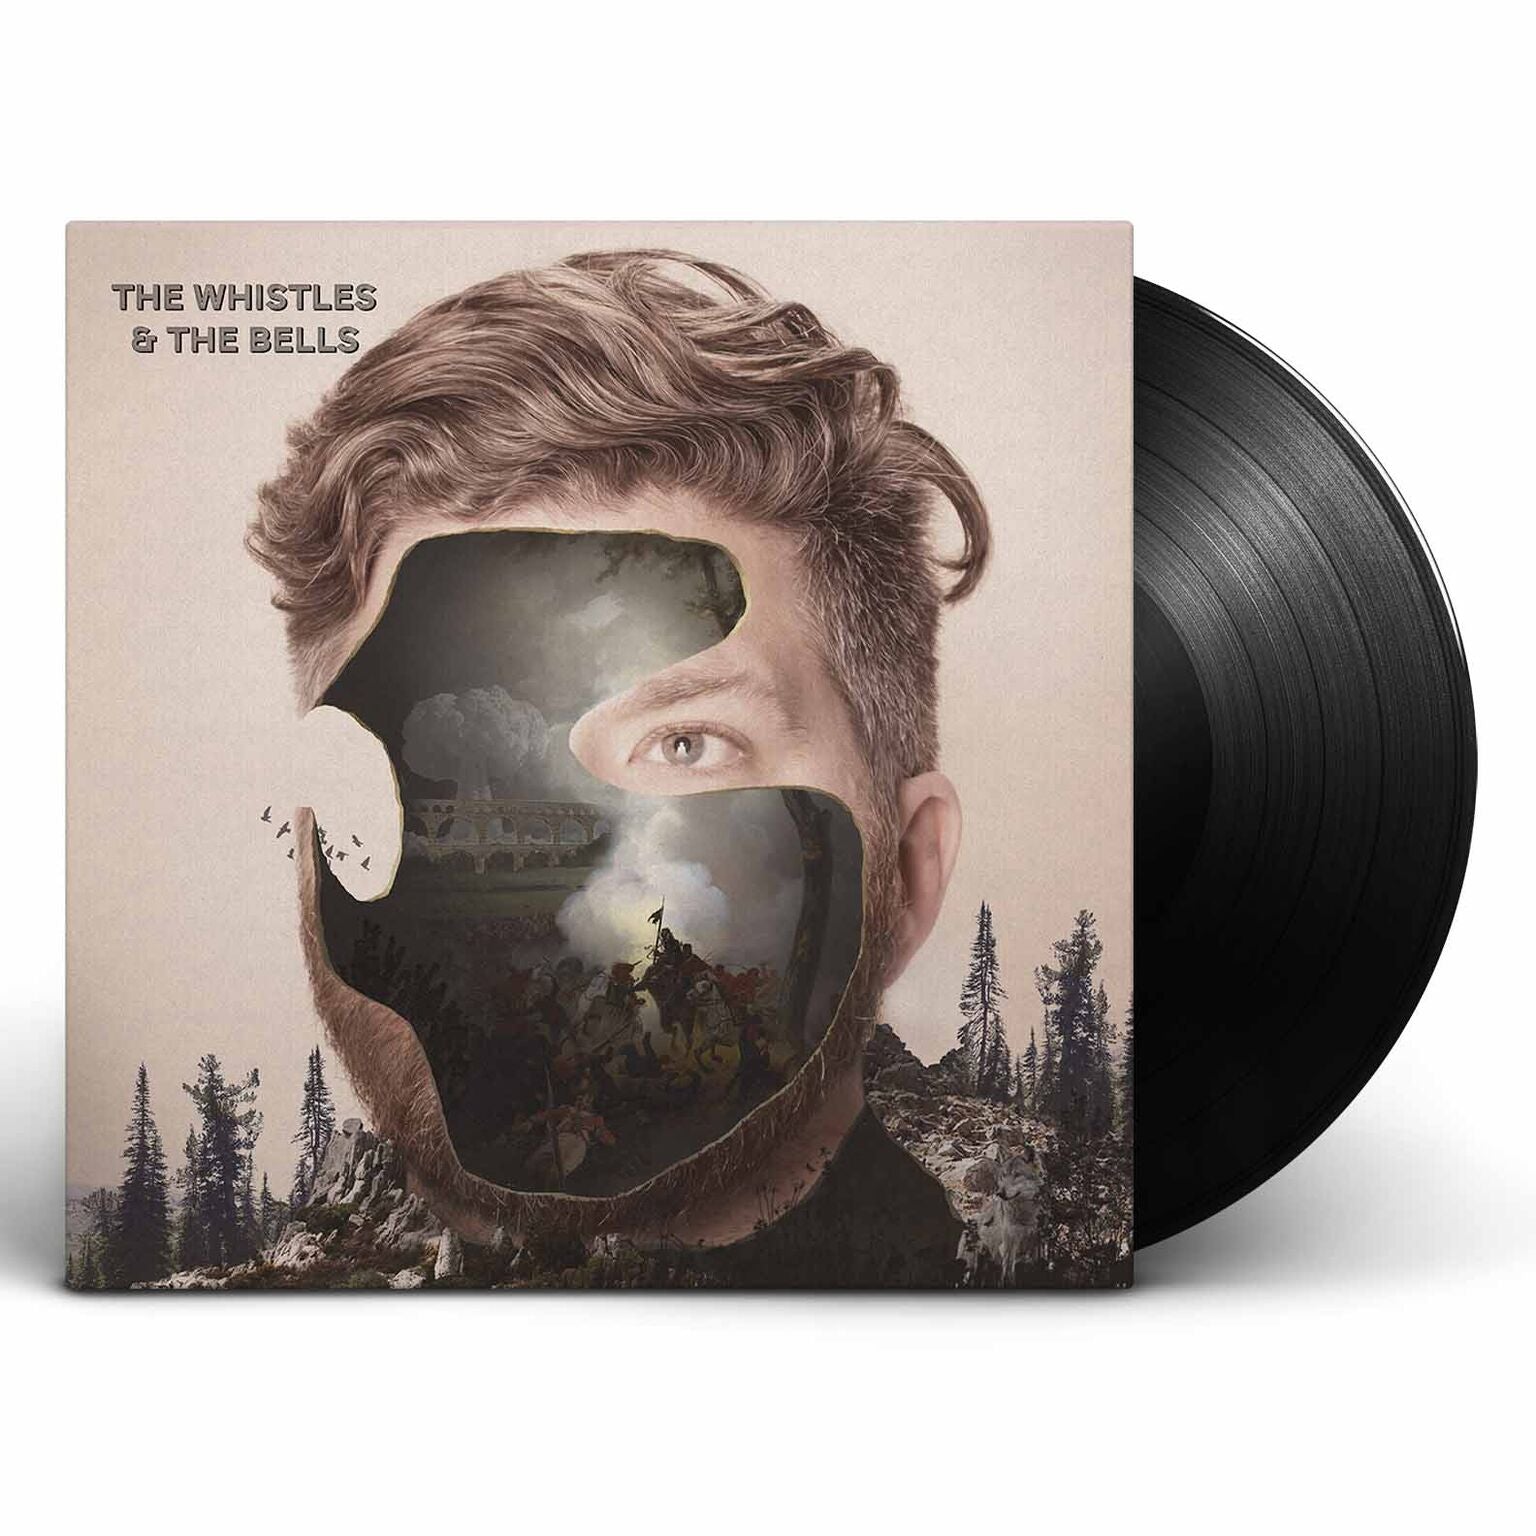 The Whistles & The Bells - The Whistles & The Bells [Vinyl]